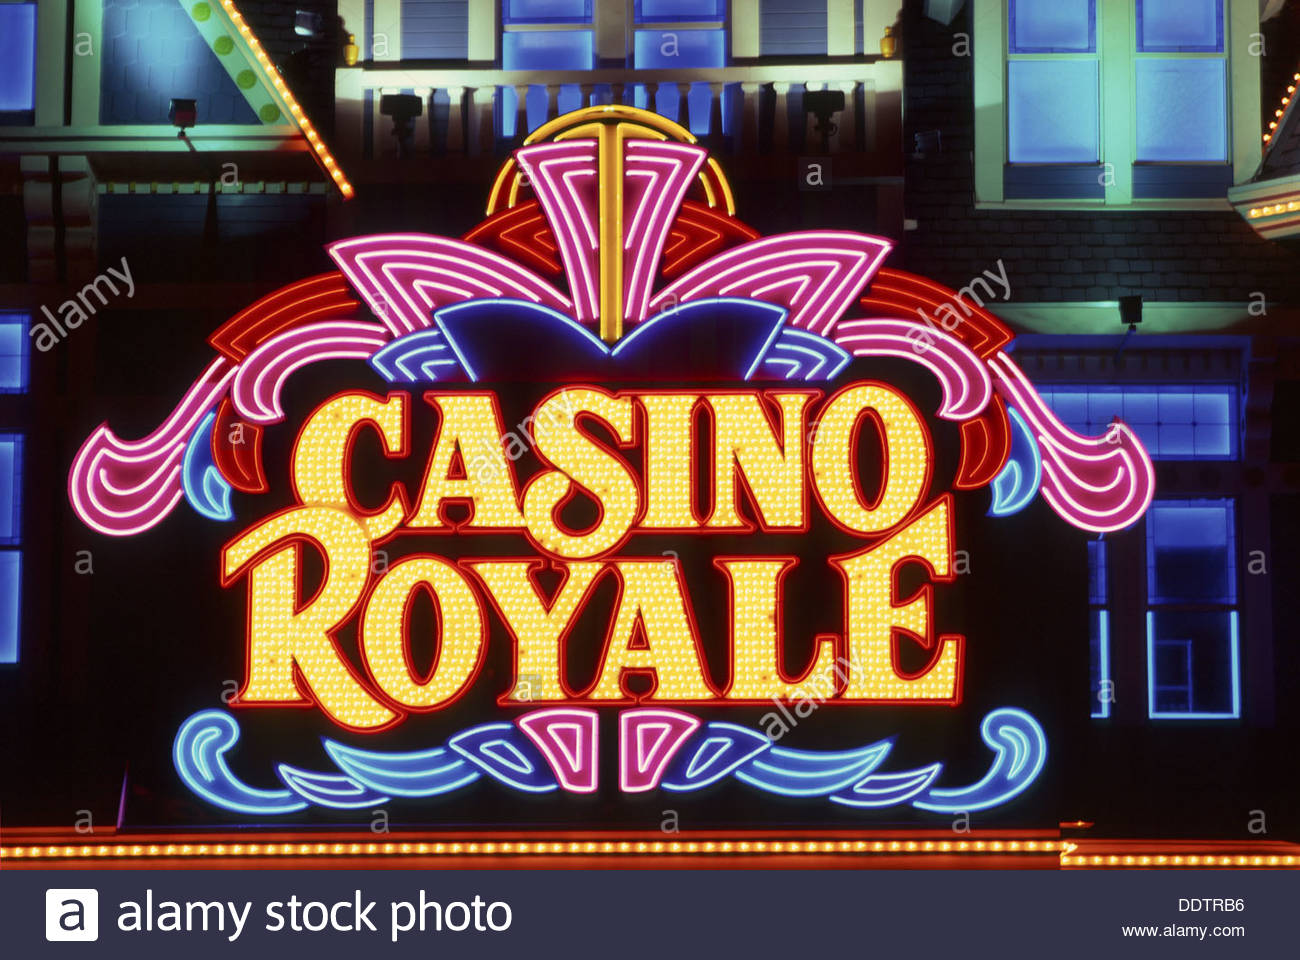 Royal Casino Vegas Online